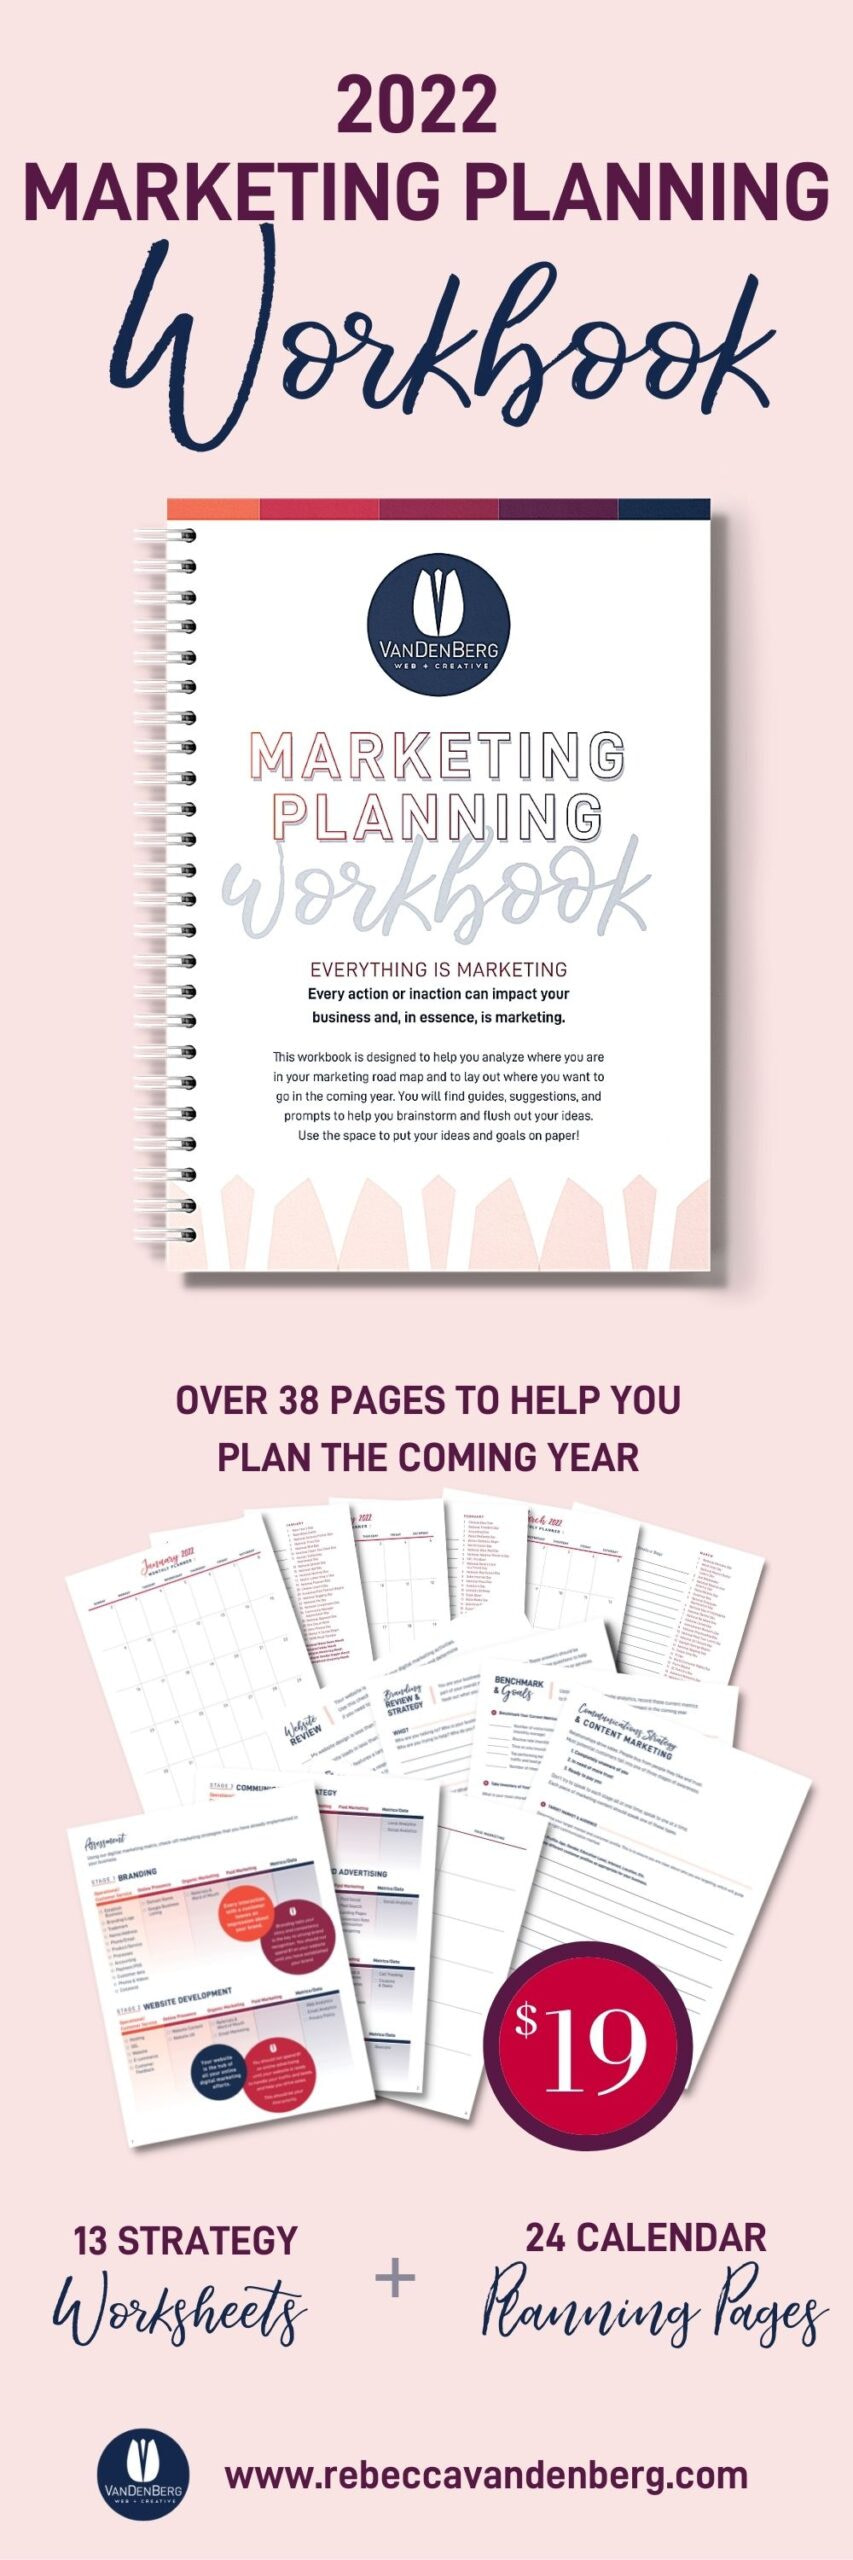 2022 Marketing Planning Workbook